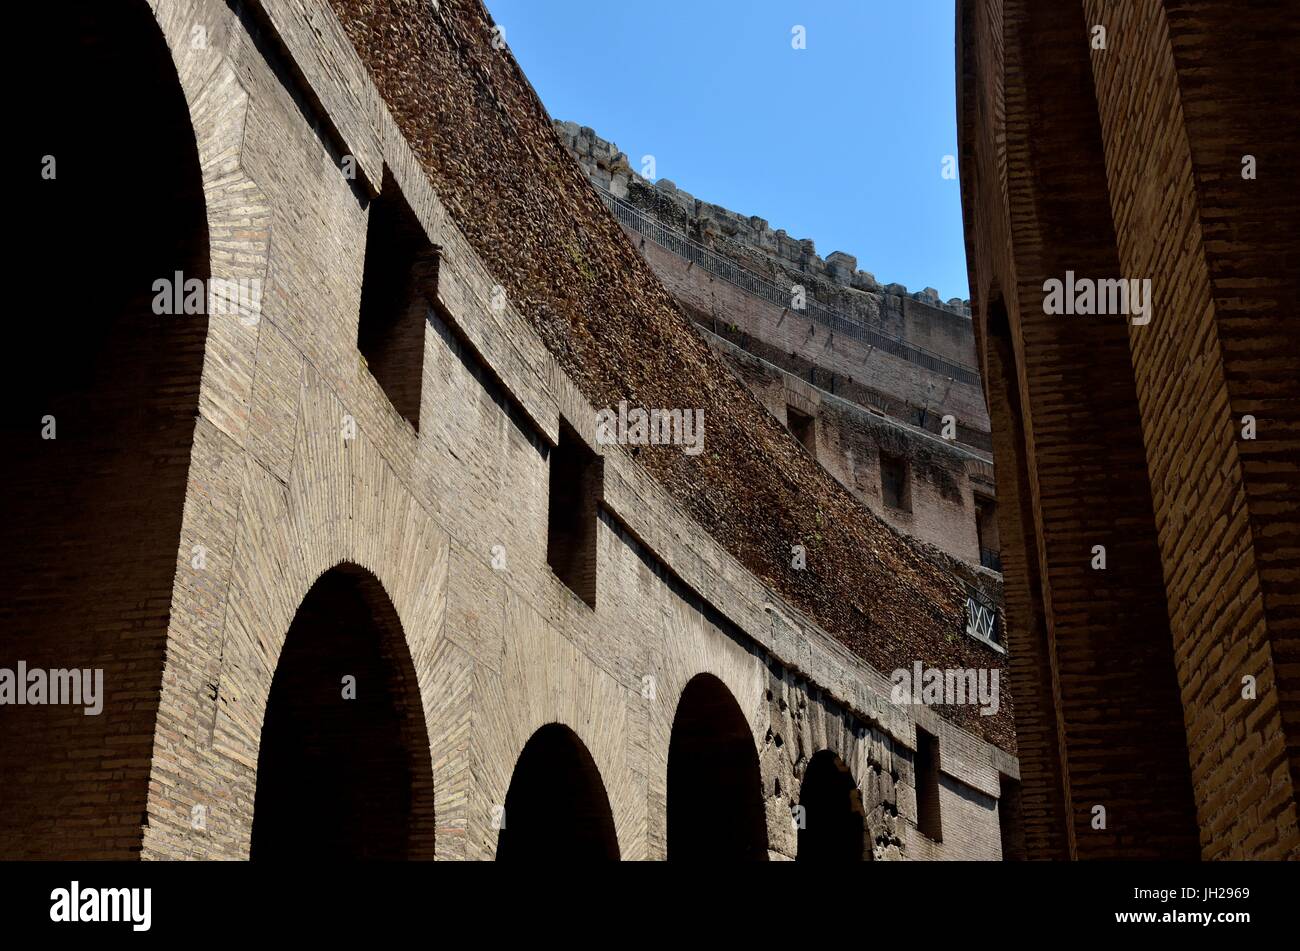 Vue partielle de l'intérieur du Colisée. C'est un amphithéâtre ovale, Rome, Italie.construits en béton et le sable c'est le plus grand amphithéâtre romain jamais construit. Banque D'Images